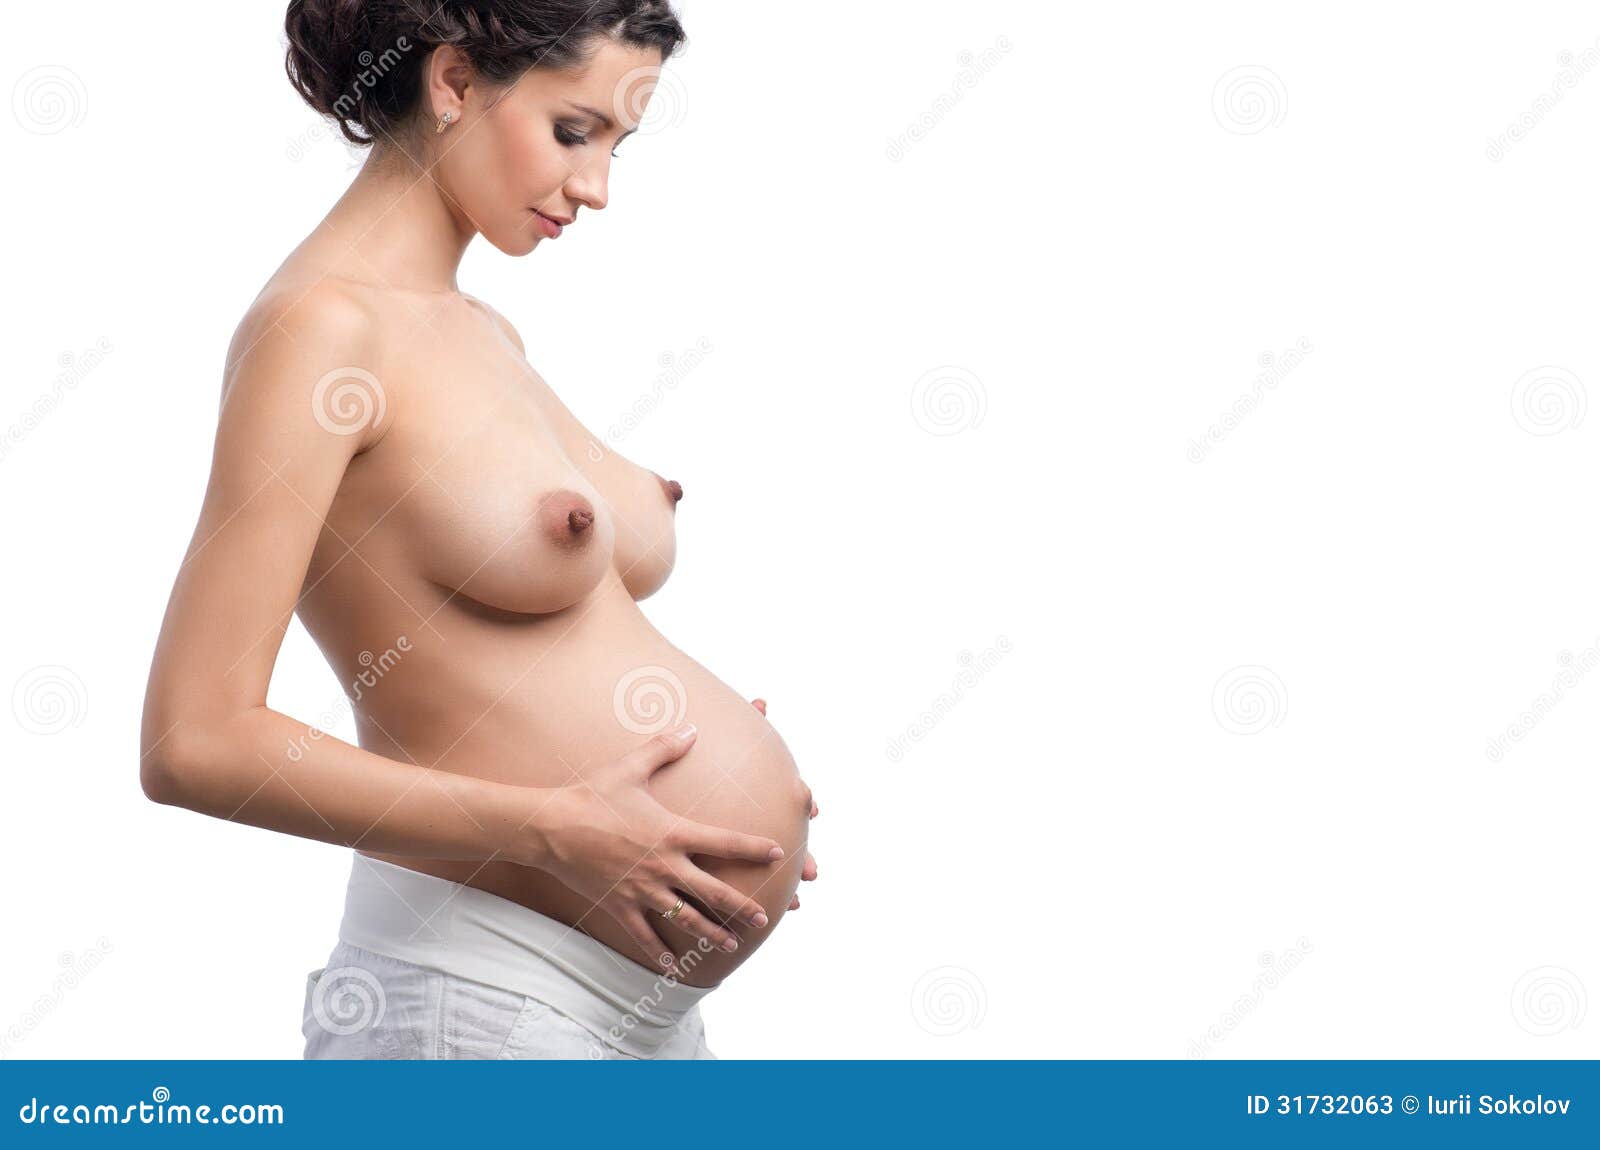 торчащая беременная грудь фото 52